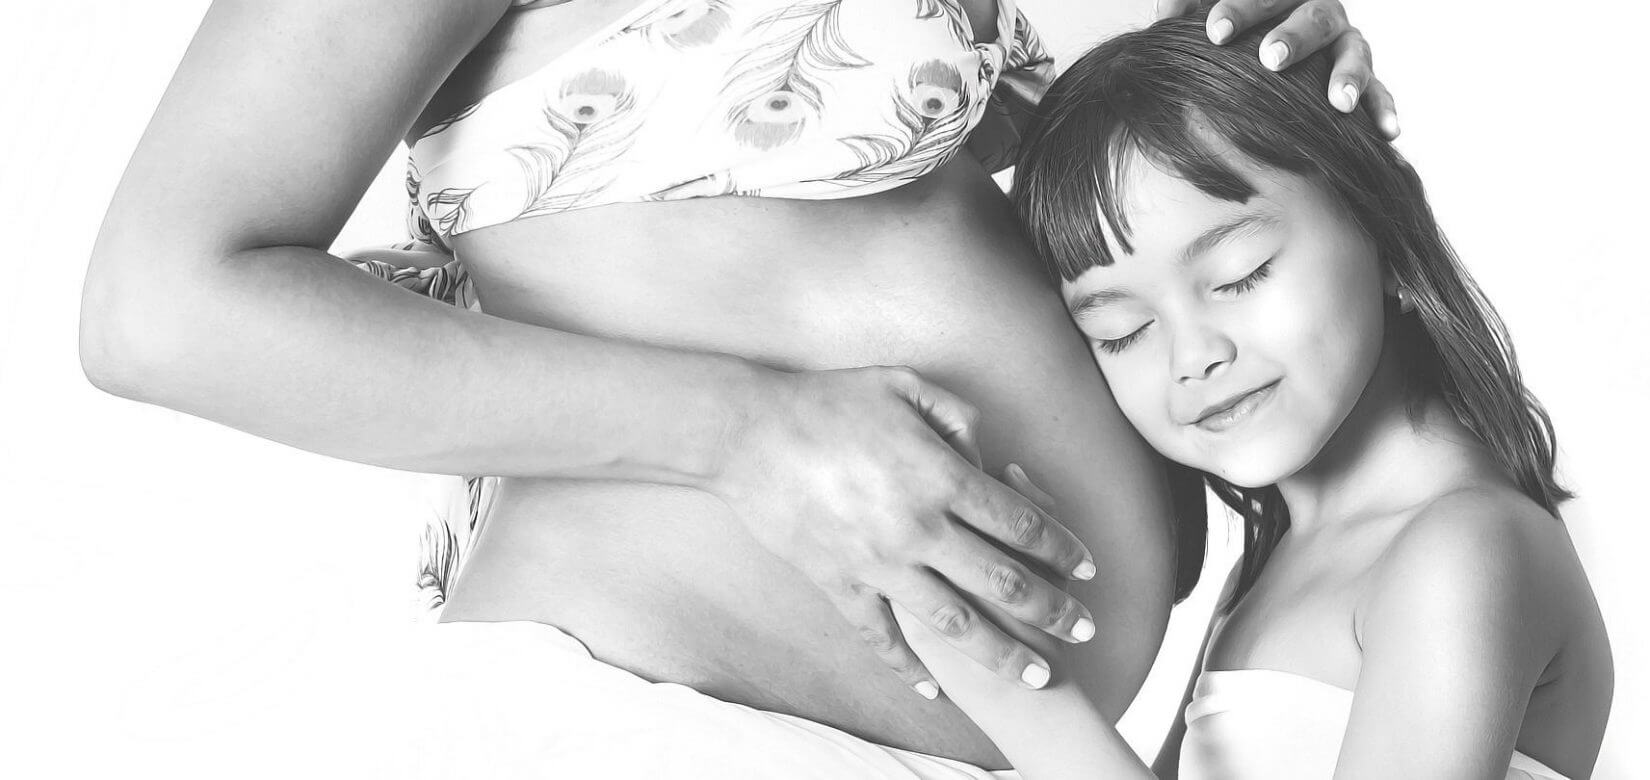 Ποιο προγεννητικό τεστ προτιμούν οι έγκυες γυναίκες;